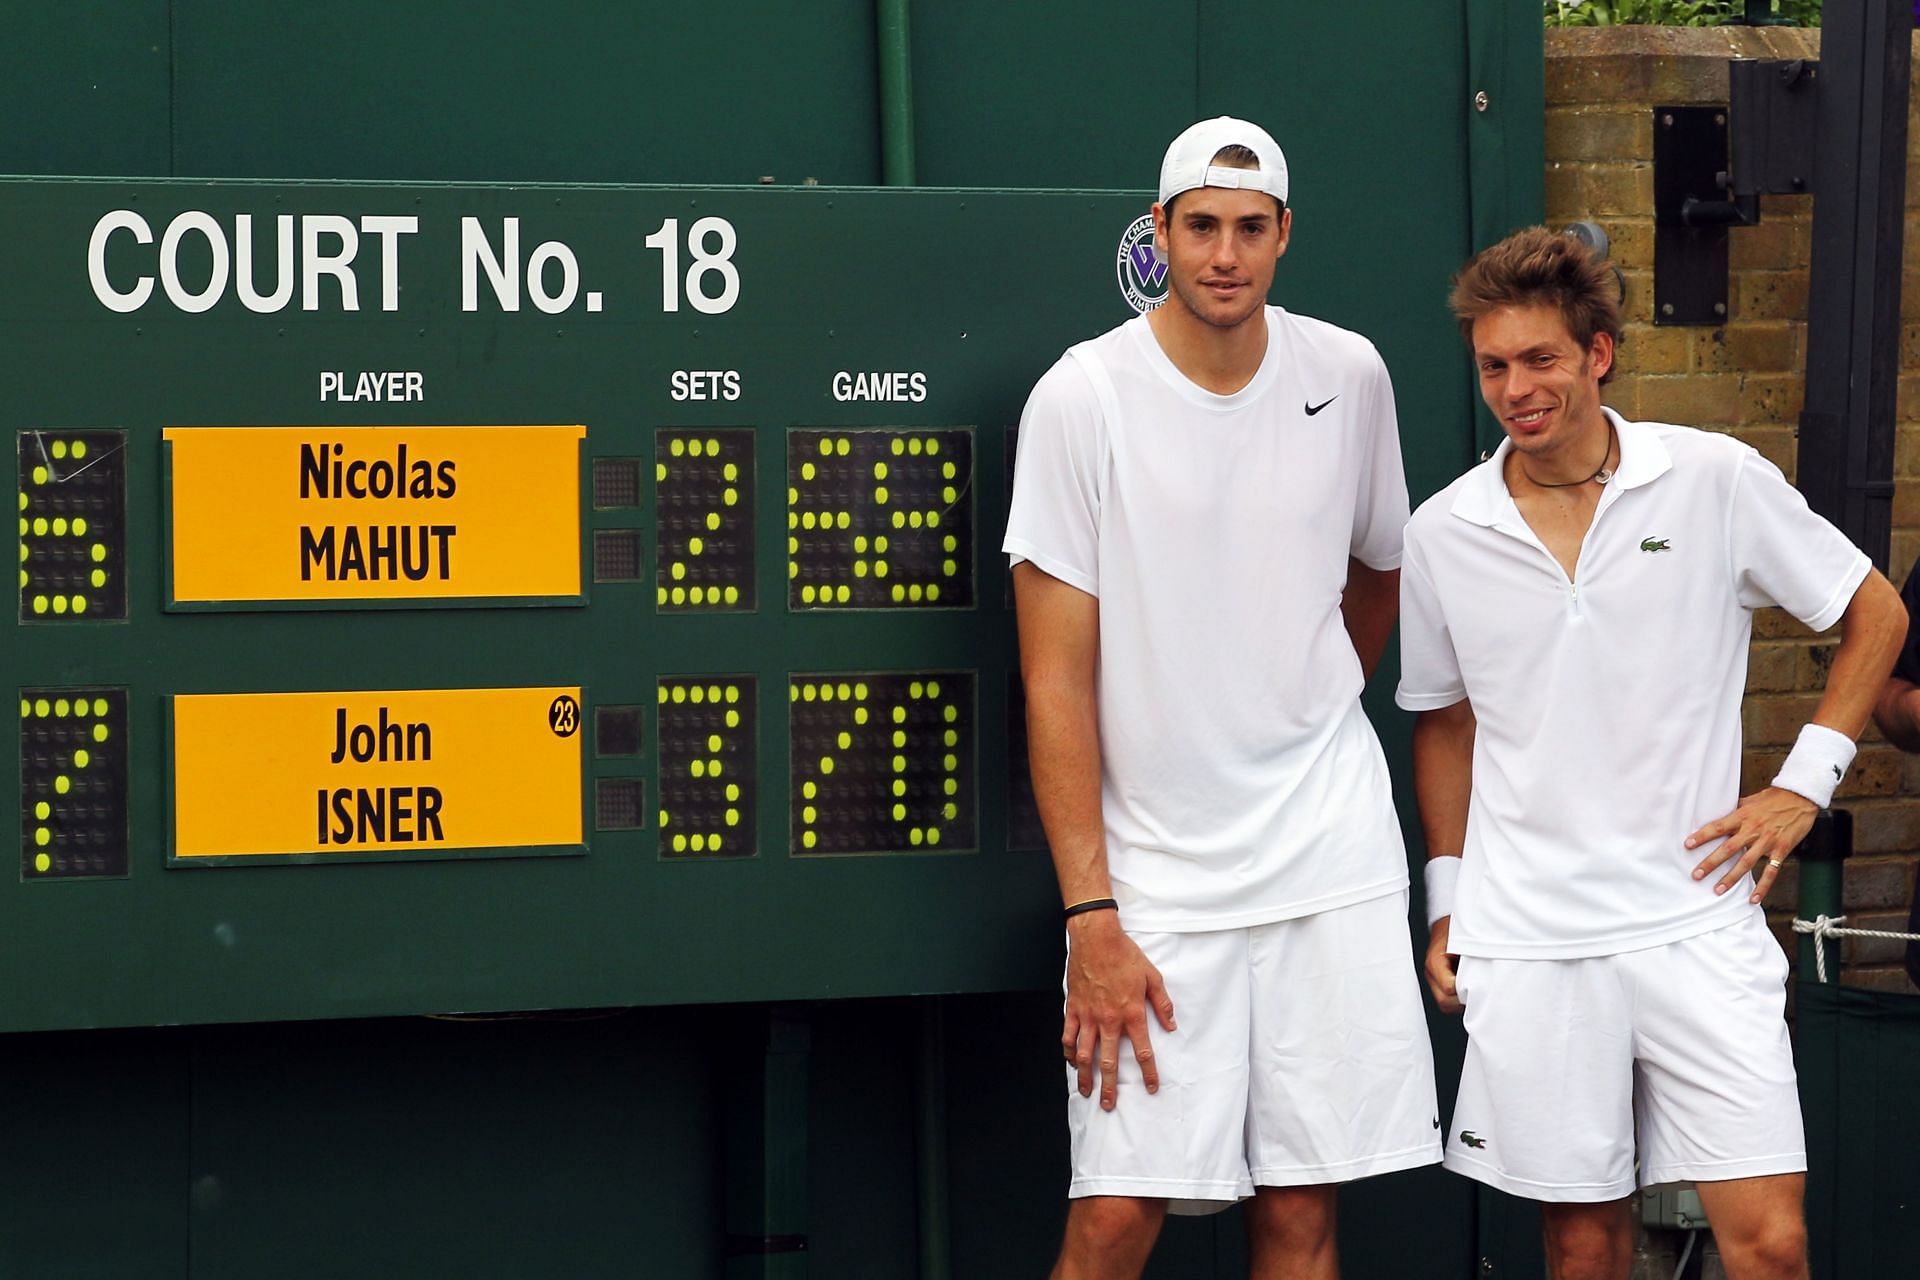 John Isner (L) and Nicolas Mahut at the 2010 Wimbledon.